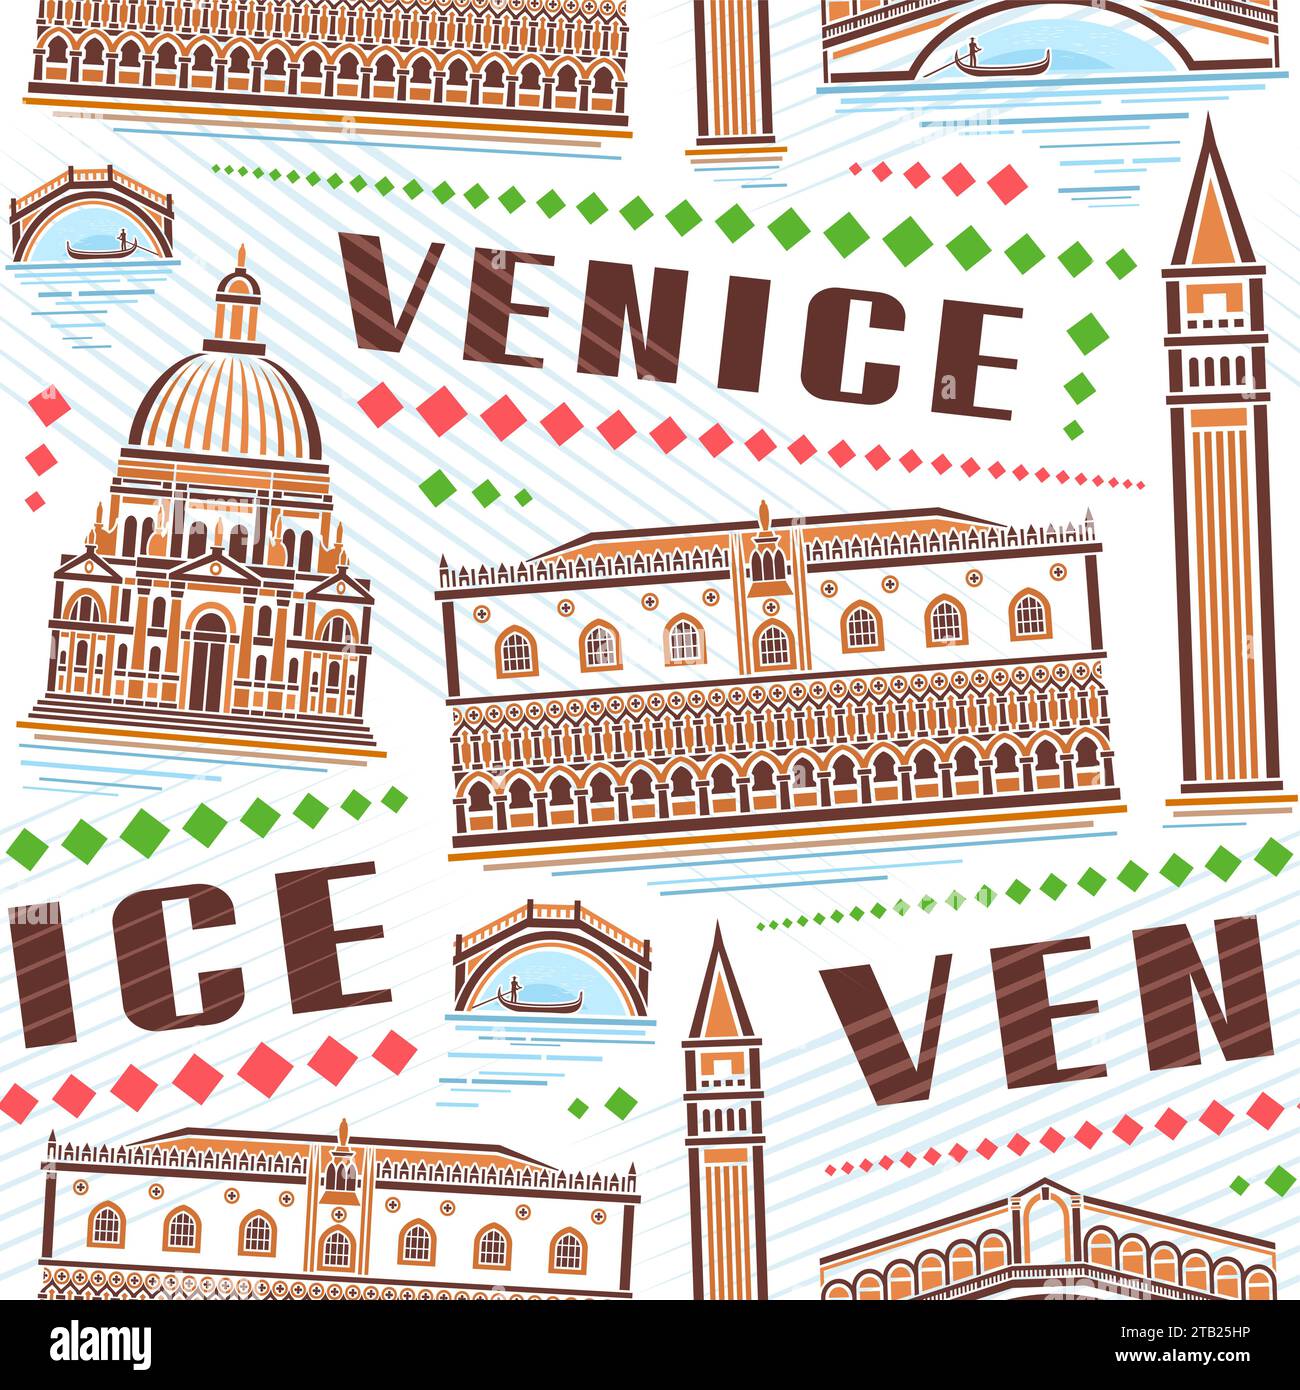 Vektor Venedig nahtloses Muster, quadratischer Wiederholungshintergrund mit Umrissillustration der berühmten venedig Stadtlandschaft auf weißem Hintergrund, dekorative Linie AR Stock Vektor